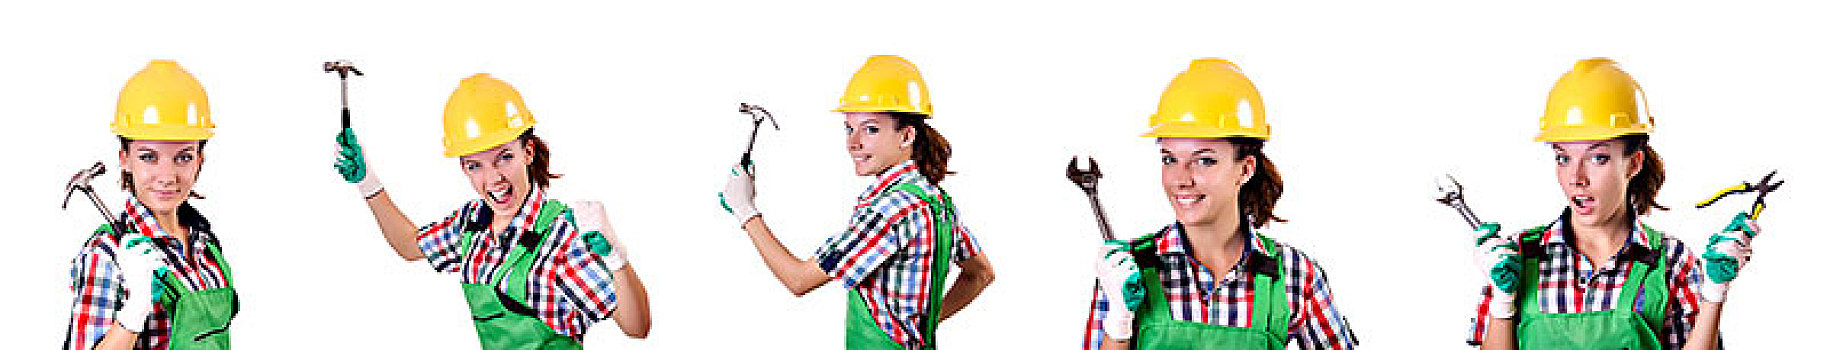 女性,工人,绿色,工作服,隔绝,白色背景